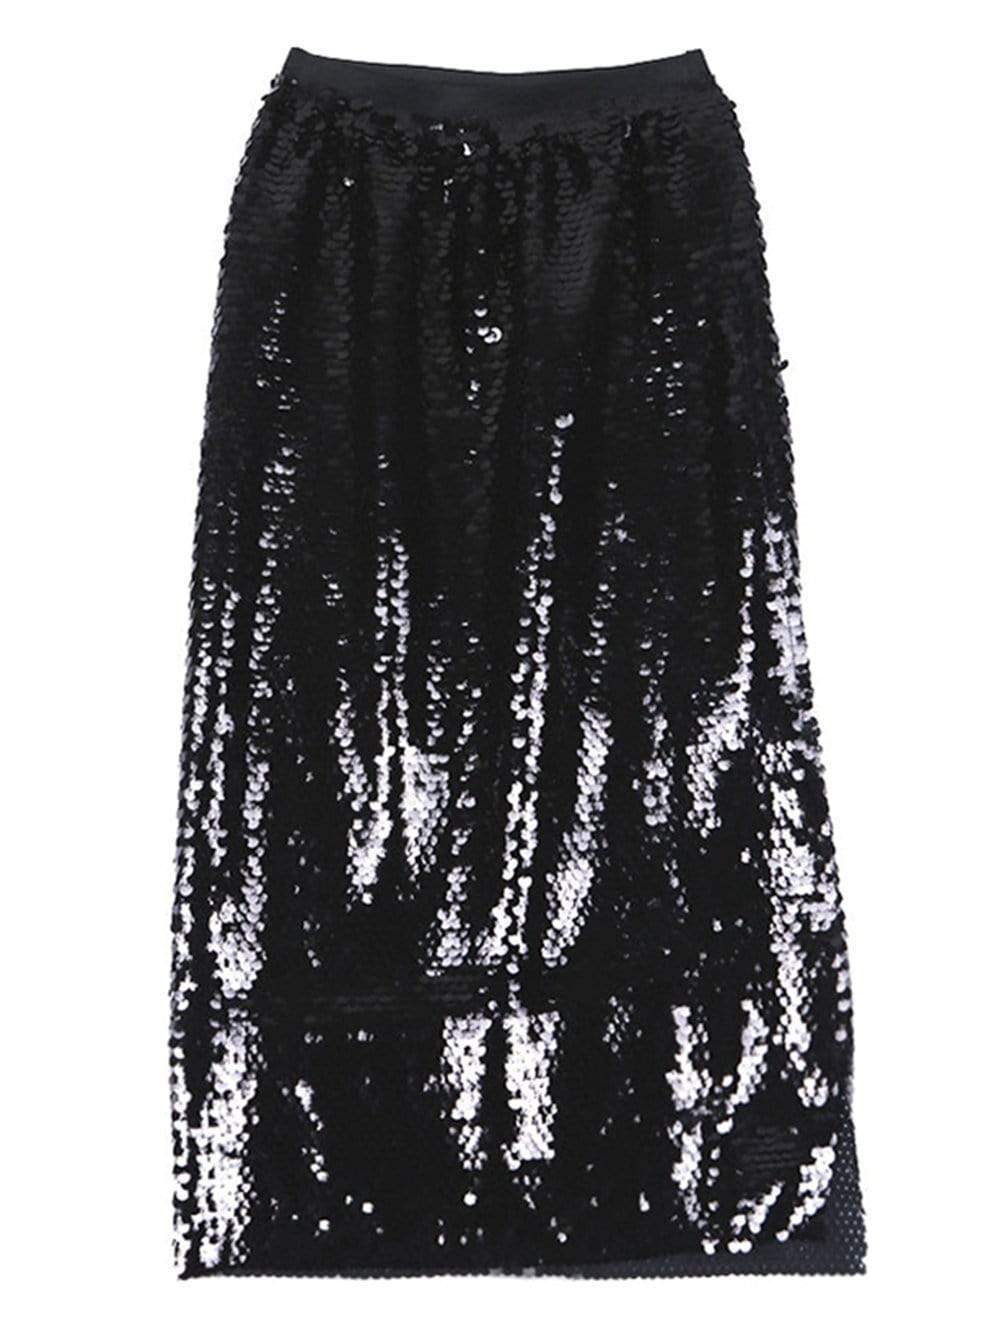 FLAMENCO Sequinned Slit Skirt